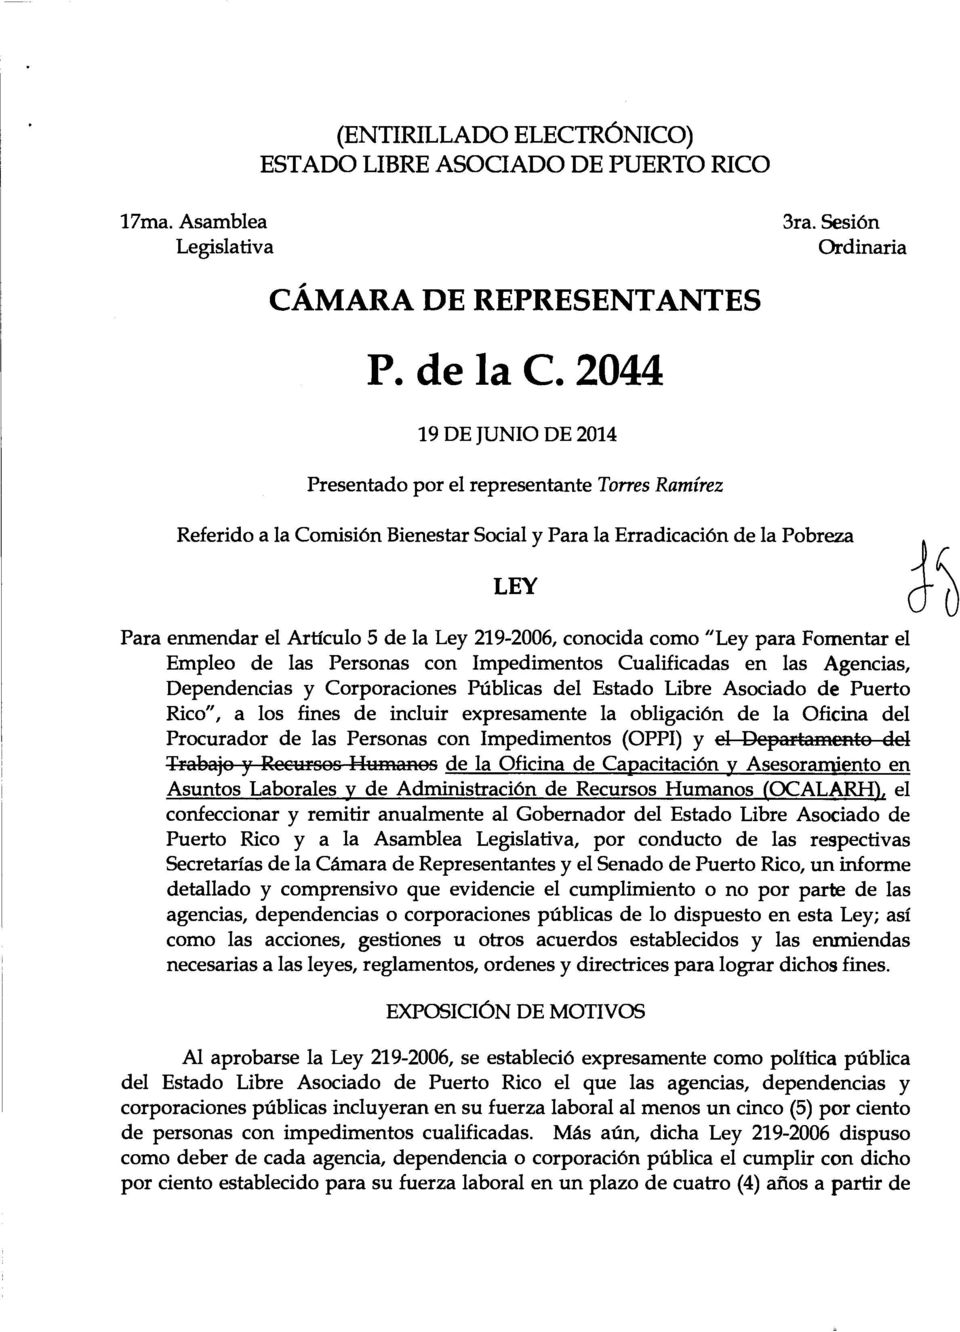 219-2006, conocida como "Ley para Fomentar el Empleo de las Personas con lmpedimentos Cualificadas en las Agendas, Dependencias y Corporaciones Publicas del Estado Libre Asociado de Puerto Rico", a